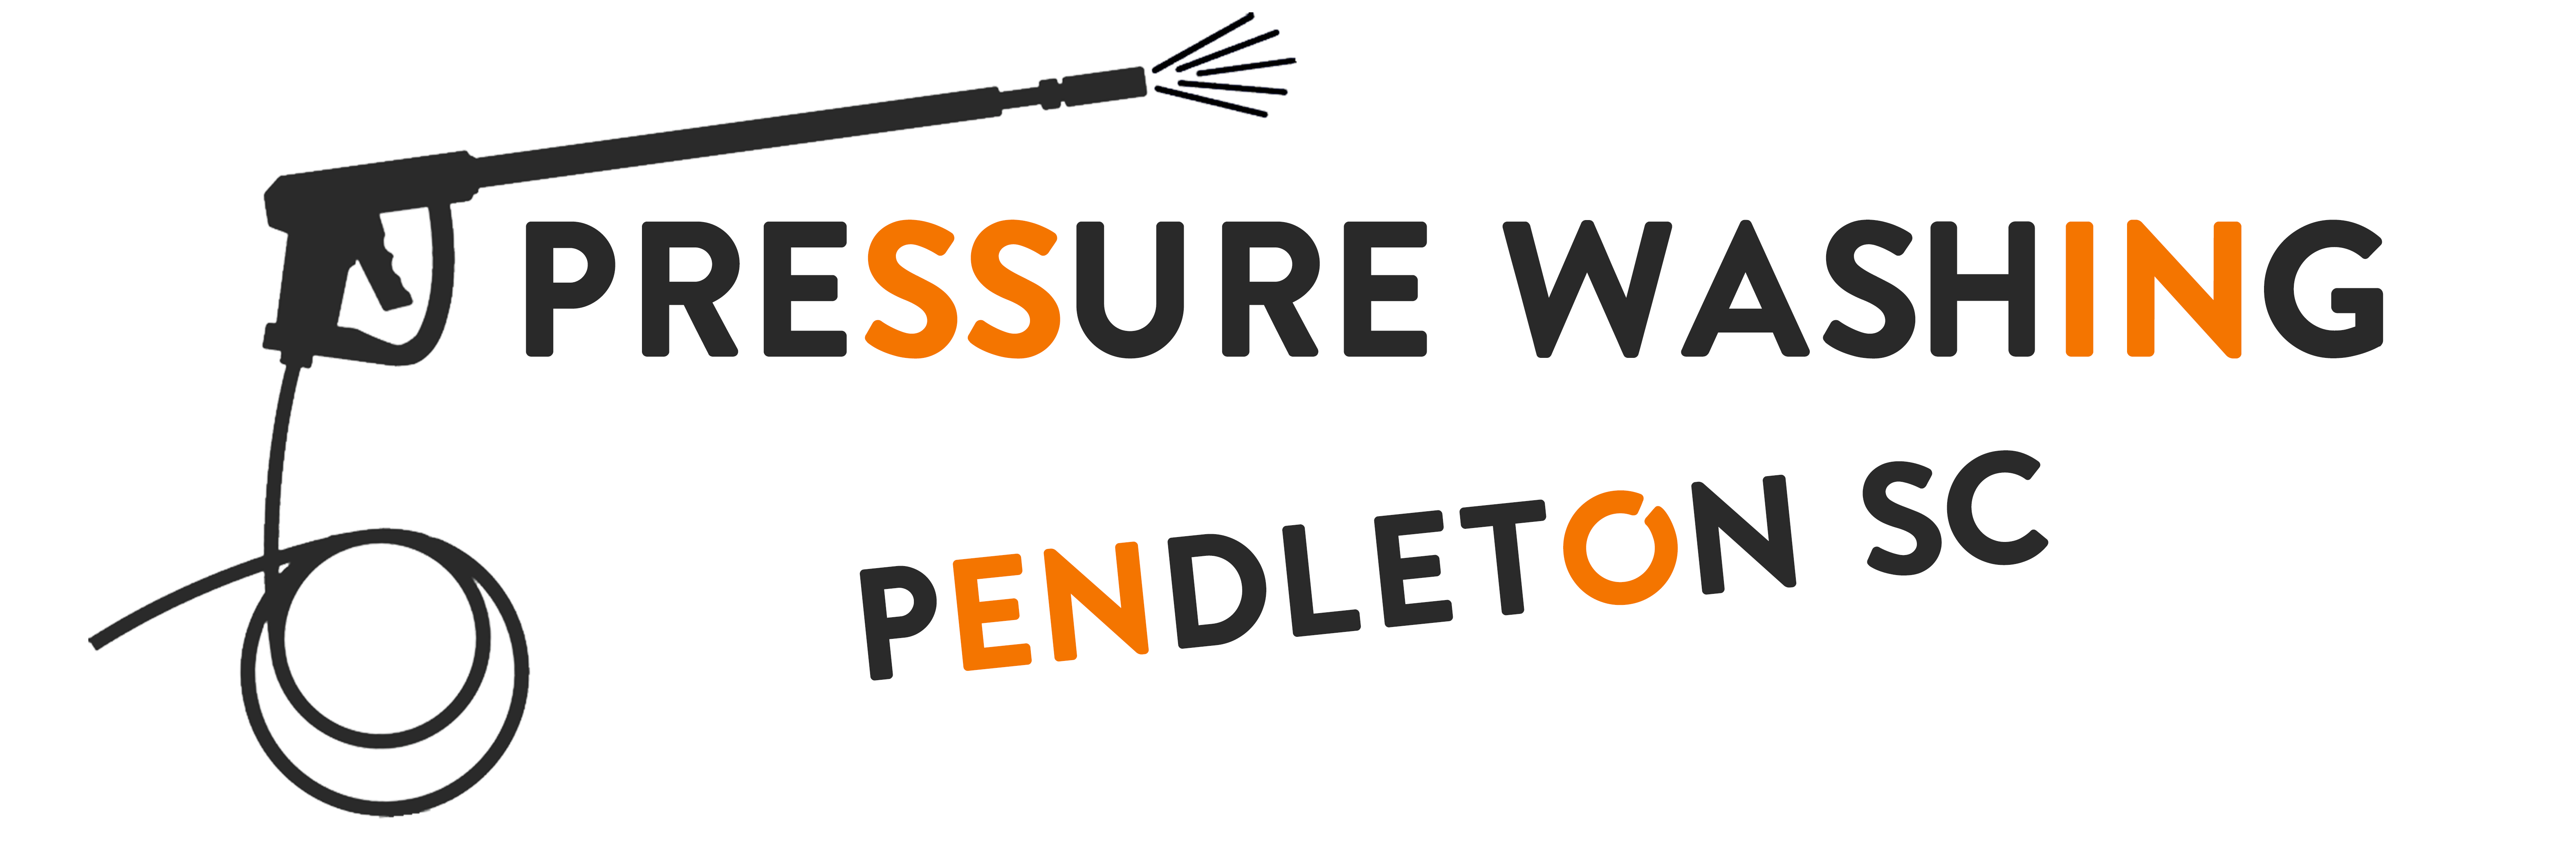 Pressure Washing Pendleton SC